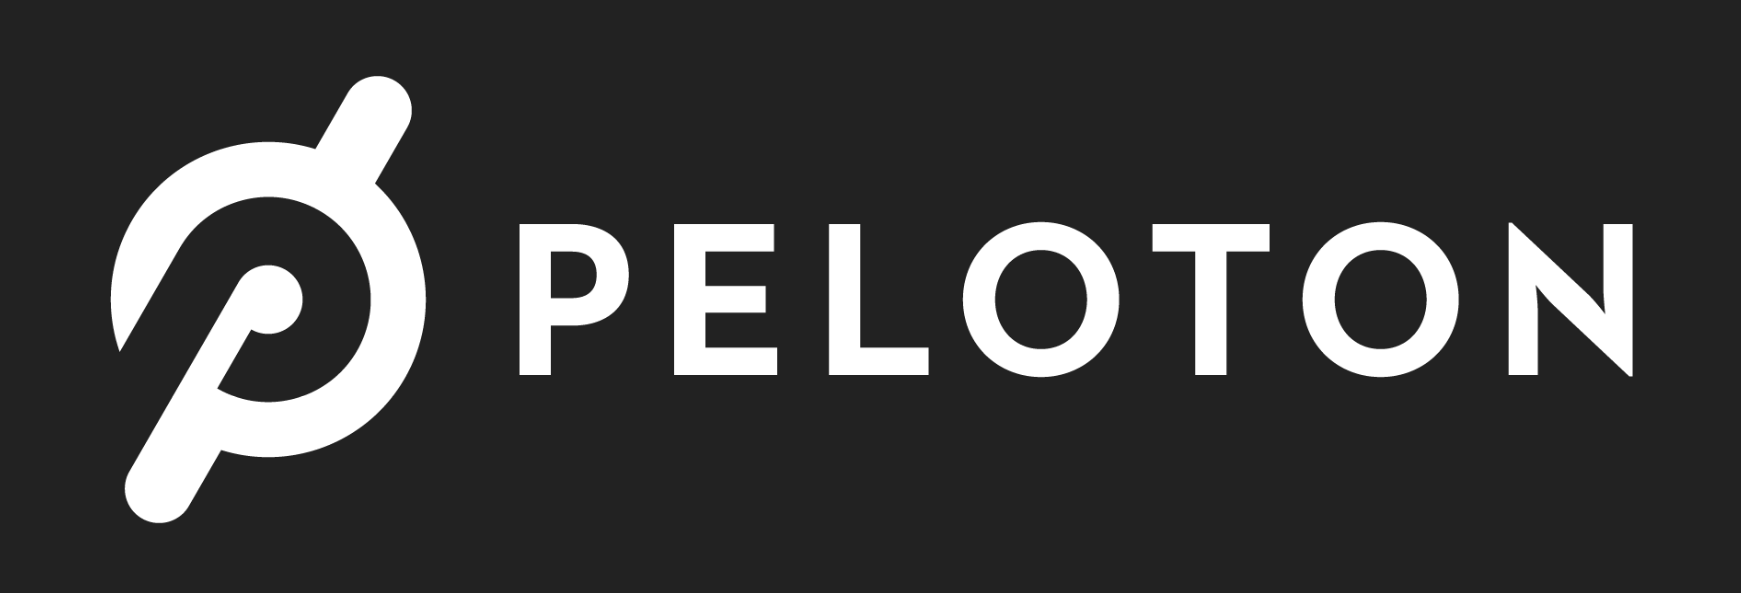 Peloton_-_crop_white-gray_logo_v2.PNG